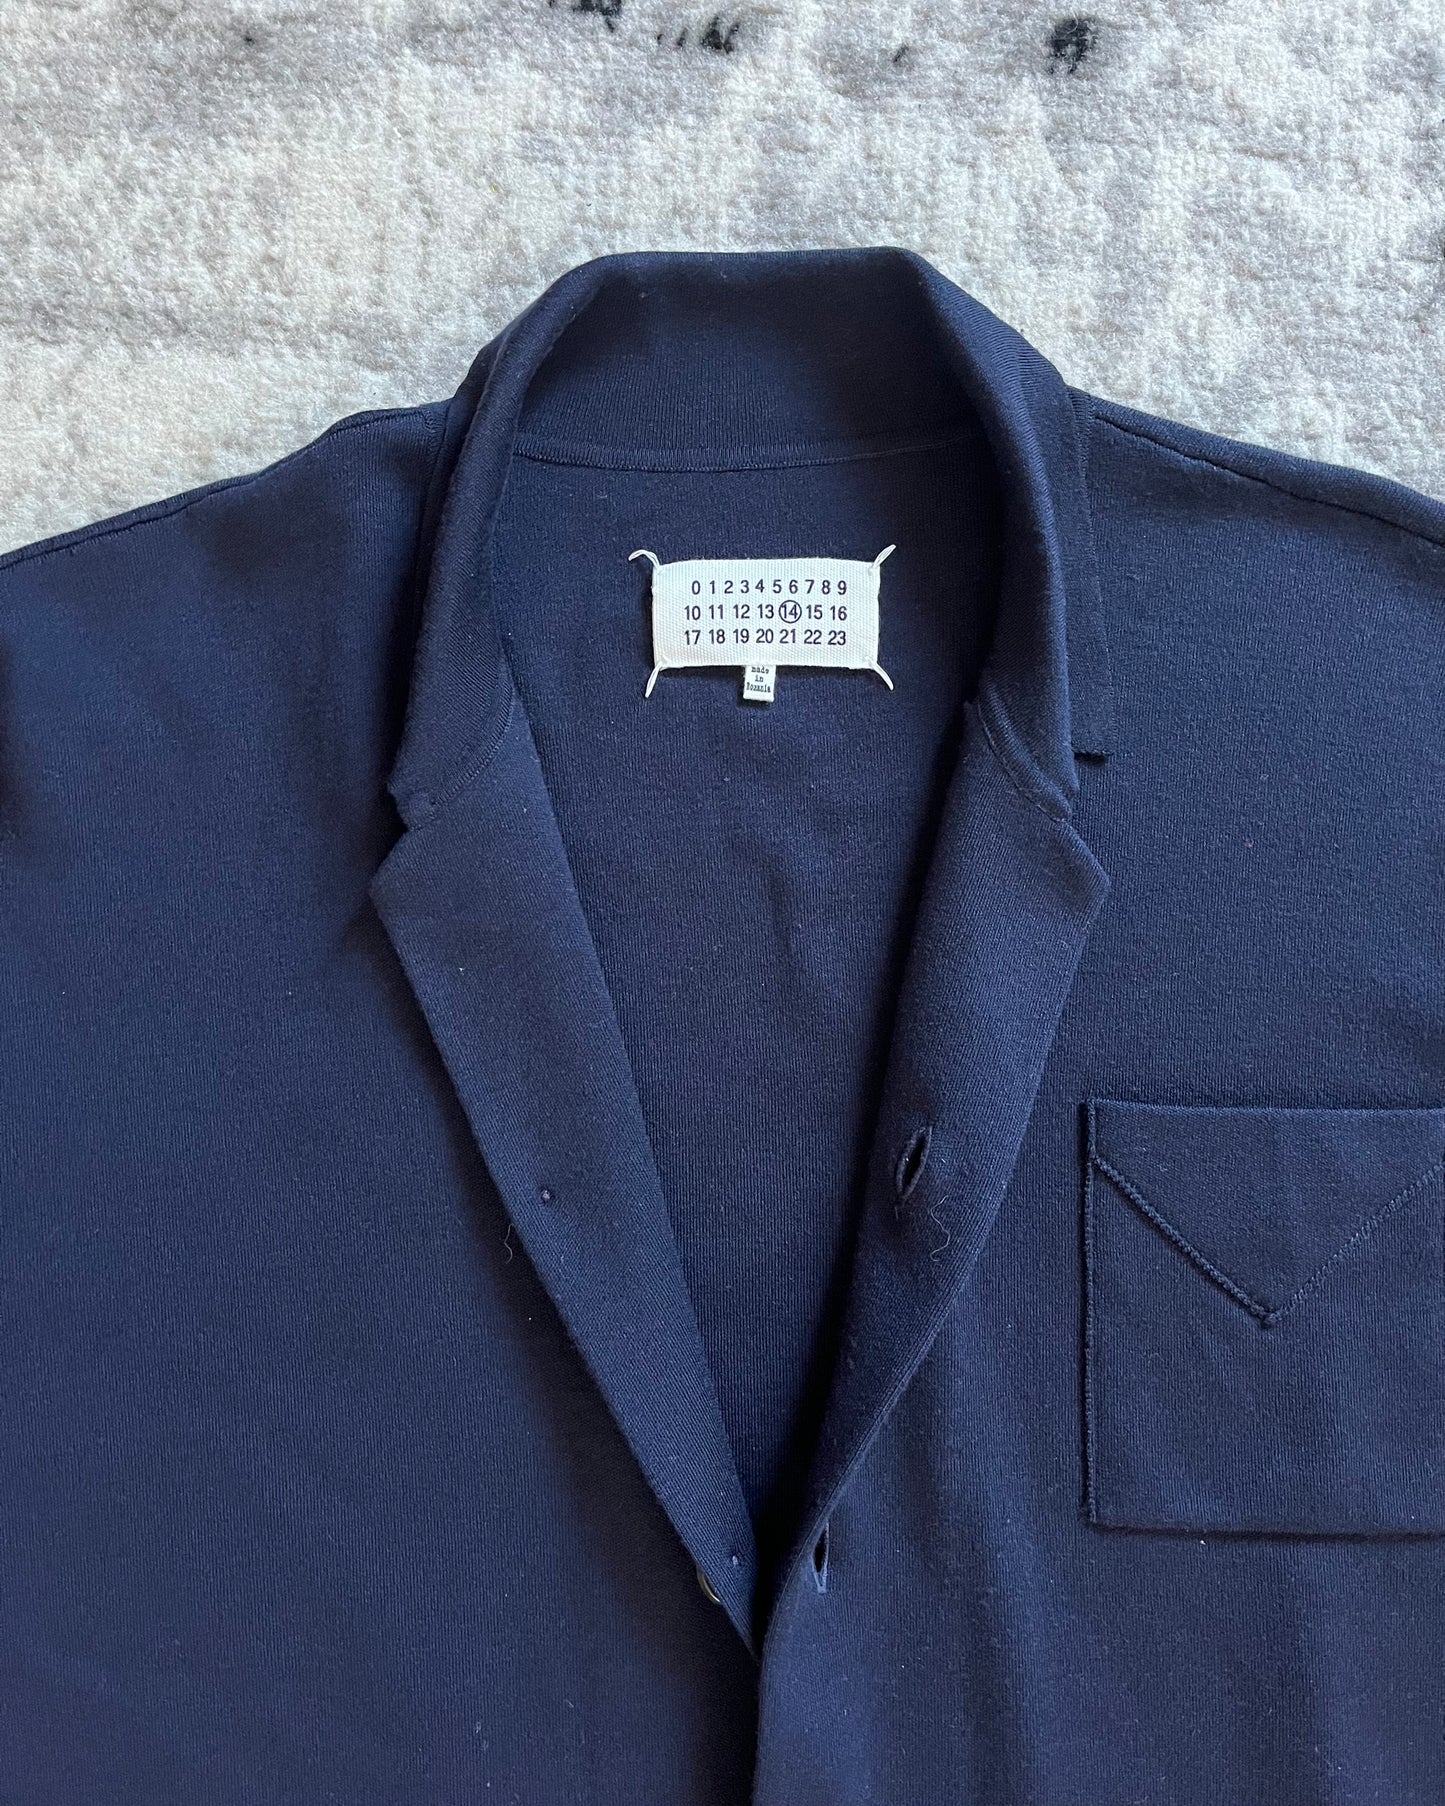 AW19 Maison Margiela Navy Wool Shirt (L/XL)